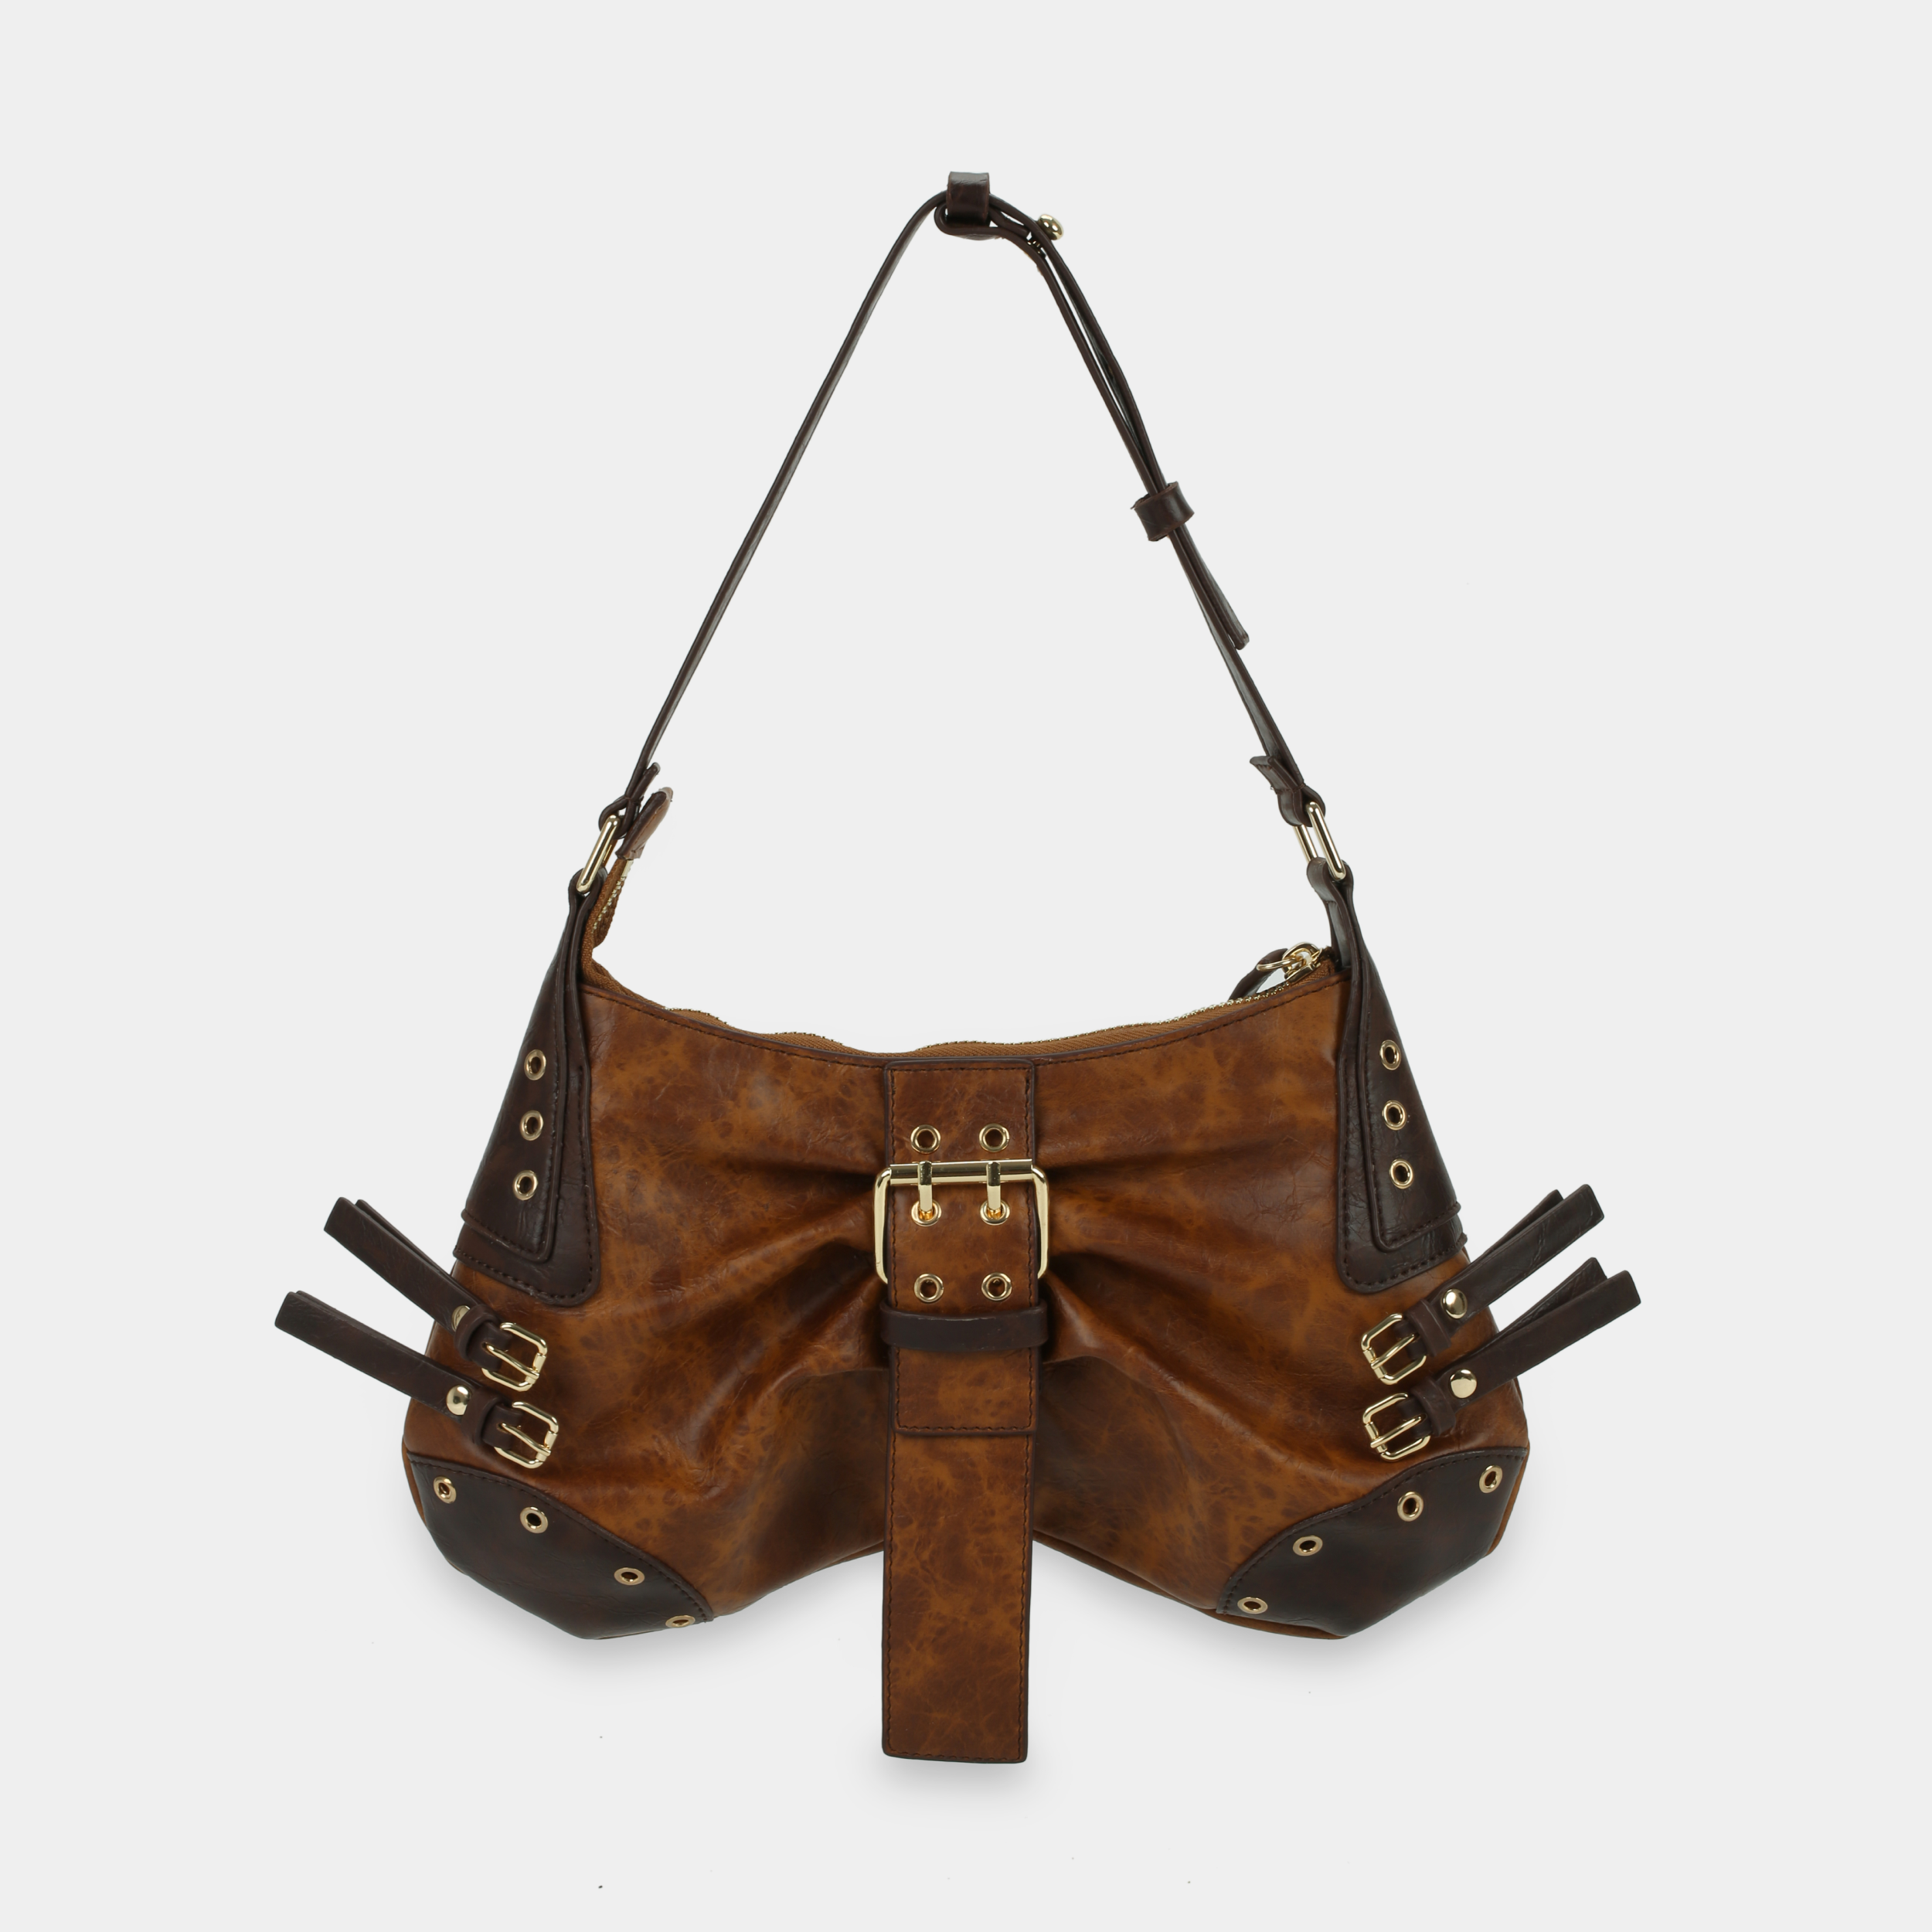 BUTTERFLY Handbag in Tender Brown x Dark Brown